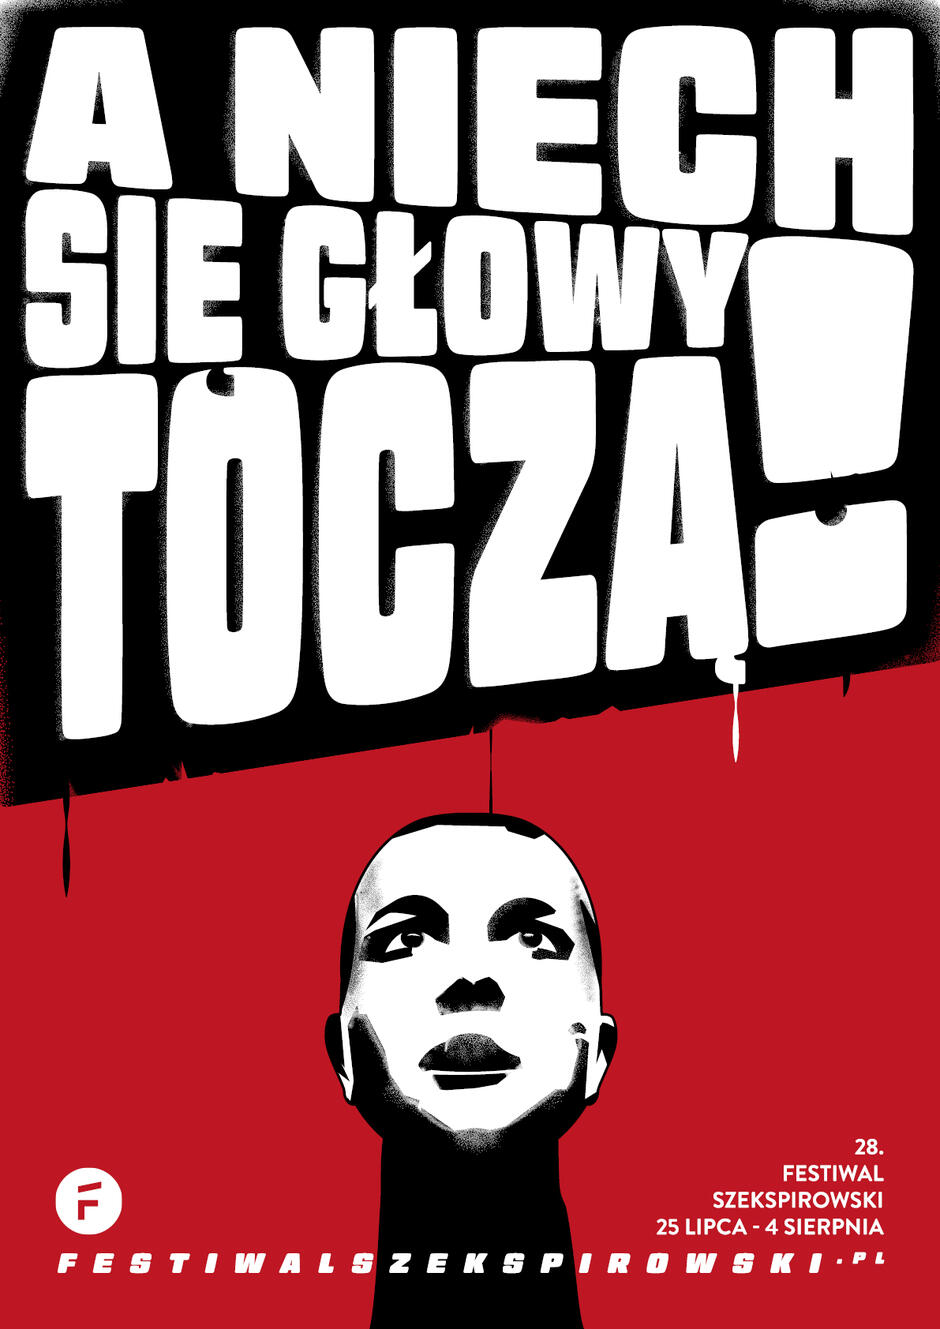 Plakat promuje 28. Festiwal Szekspirowski, odbywający się w dniach 25 lipca - 4 sierpnia, z hasłem A niech się głowy toczą! . Na czerwonym tle widnieje czarno-biała grafika przedstawiająca odciętą głowę